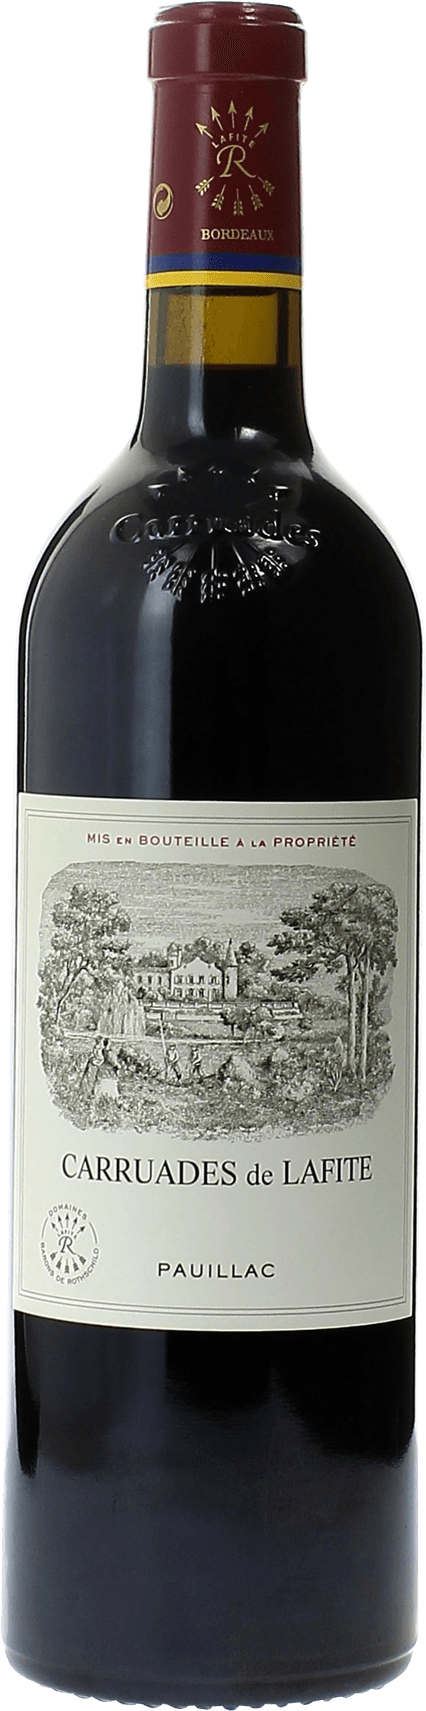 Carruades de lafite 2017 2me vin de LAFITE ROTHSCHILD Pauillac, Bordeaux rouge